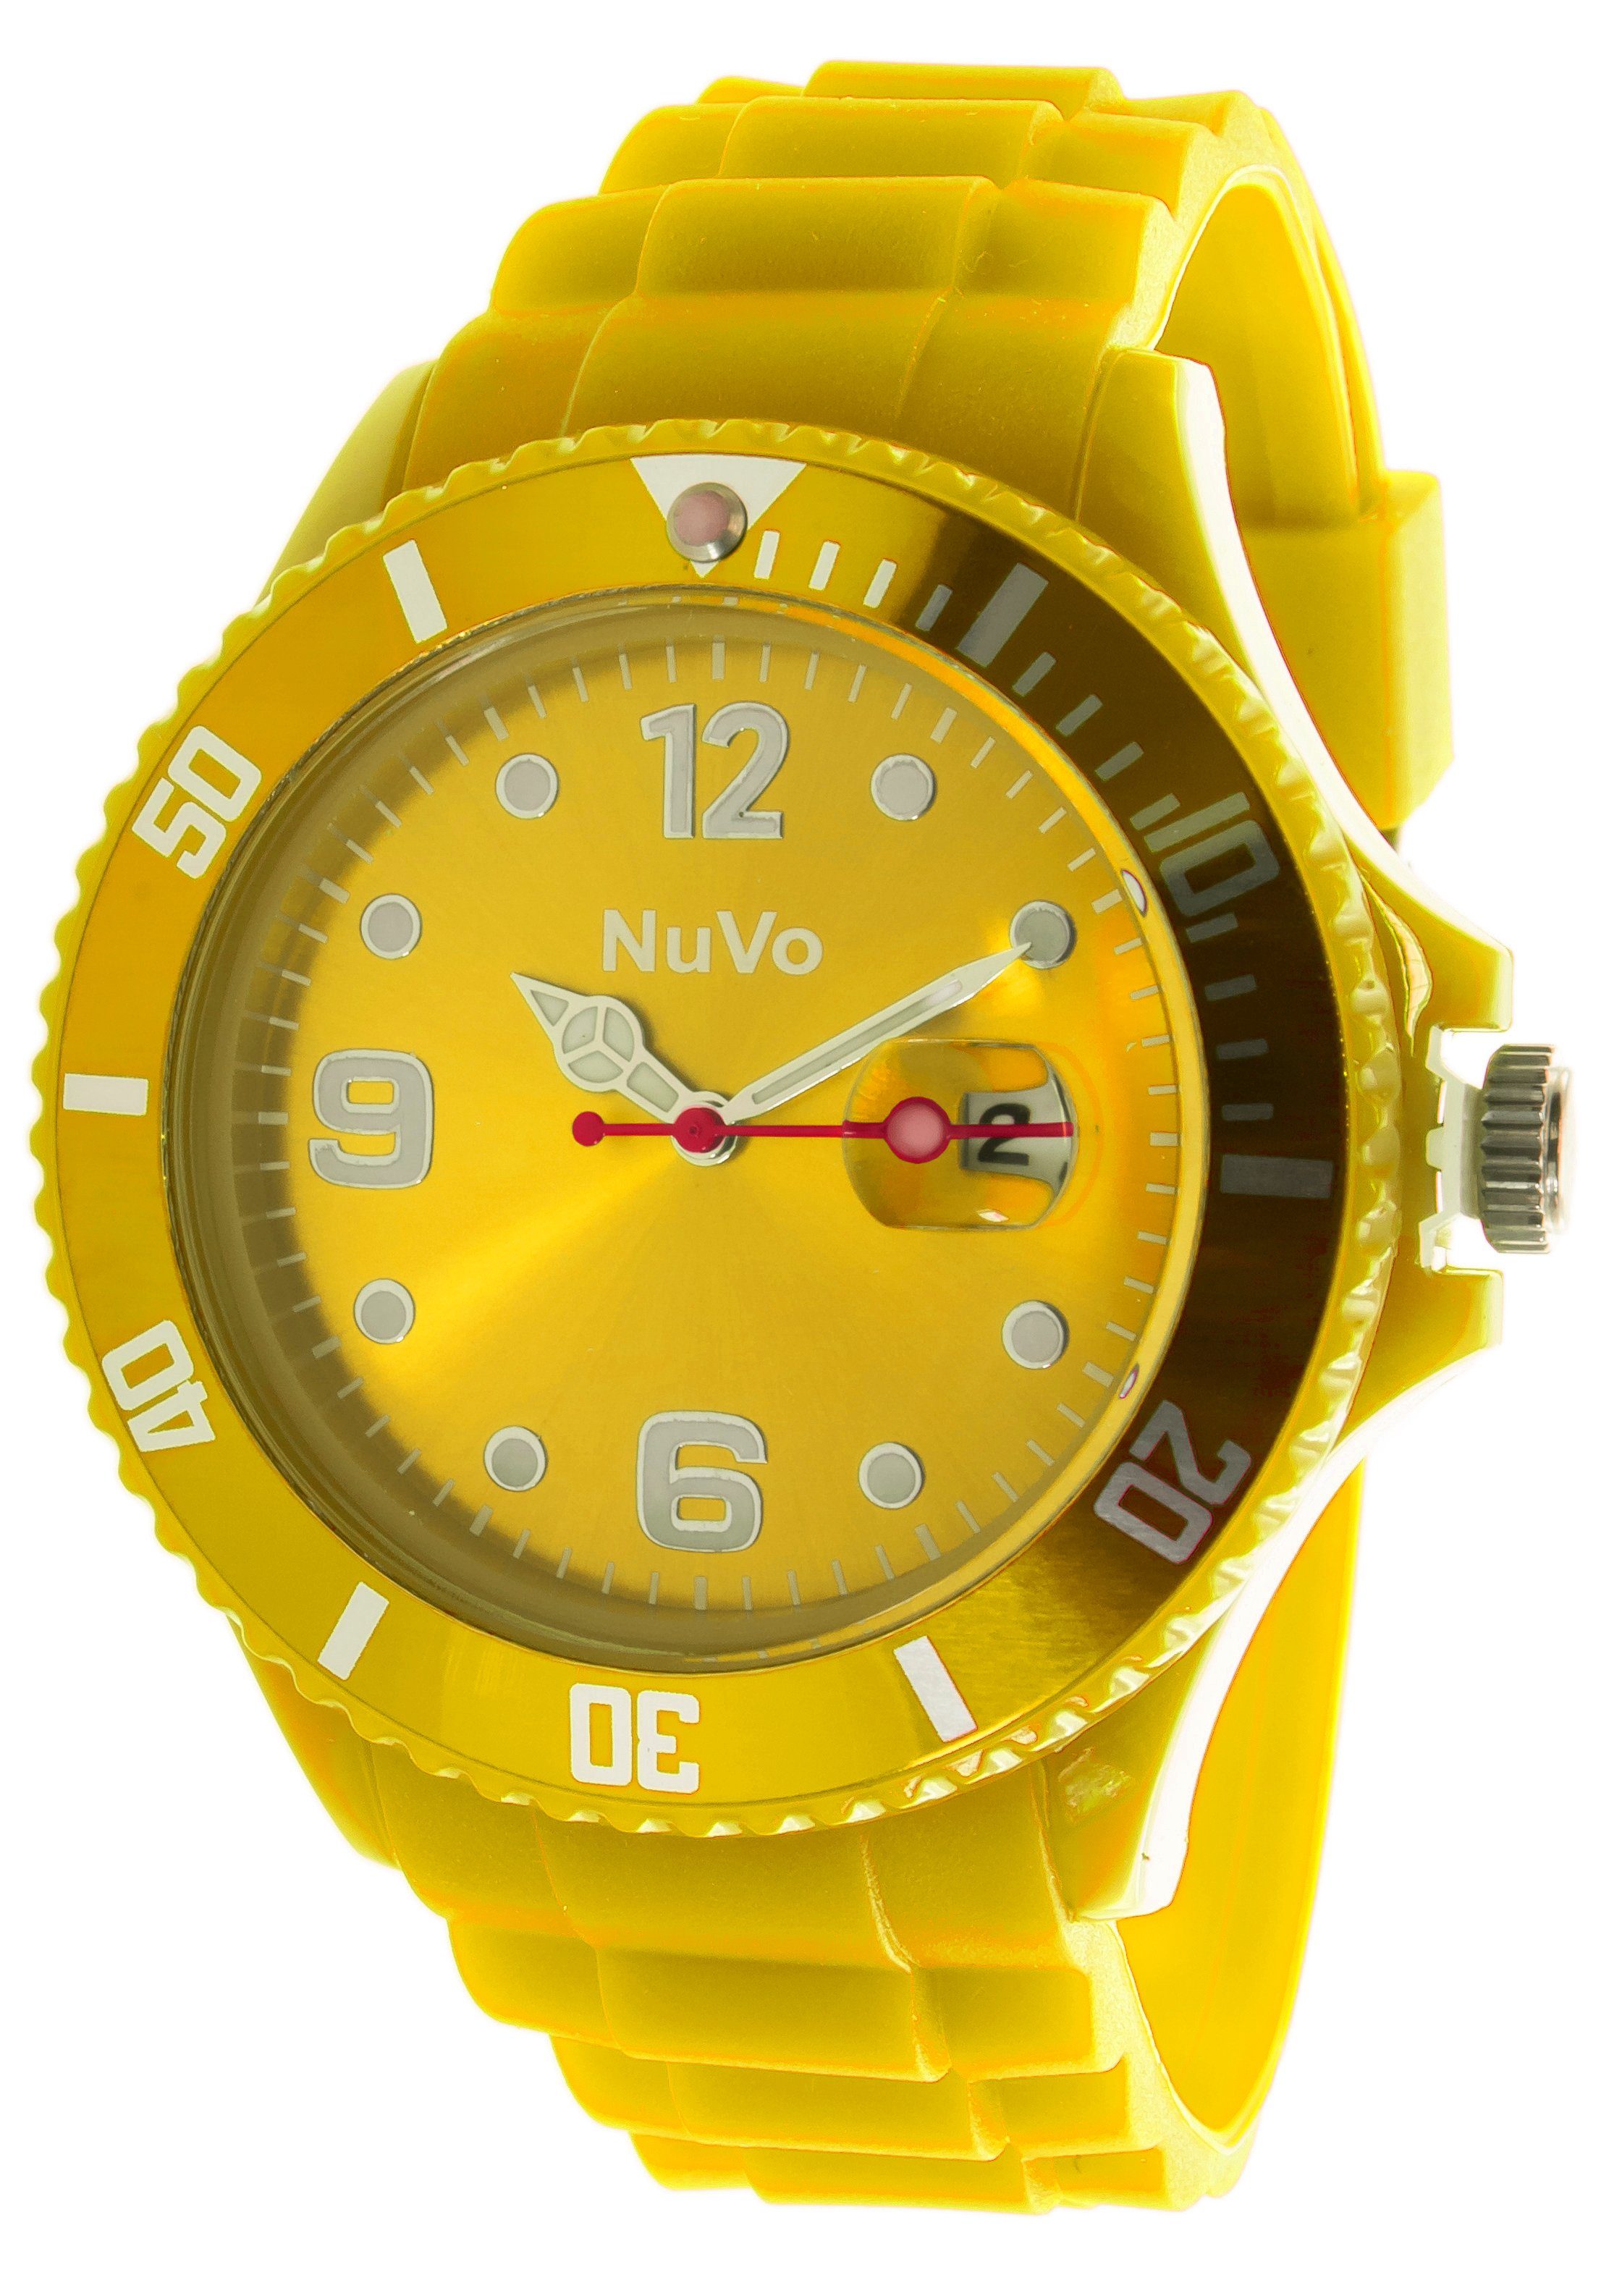 Nuvo Quarzuhr Auffällige Unisex Armbanduhr mit sportlichem Design